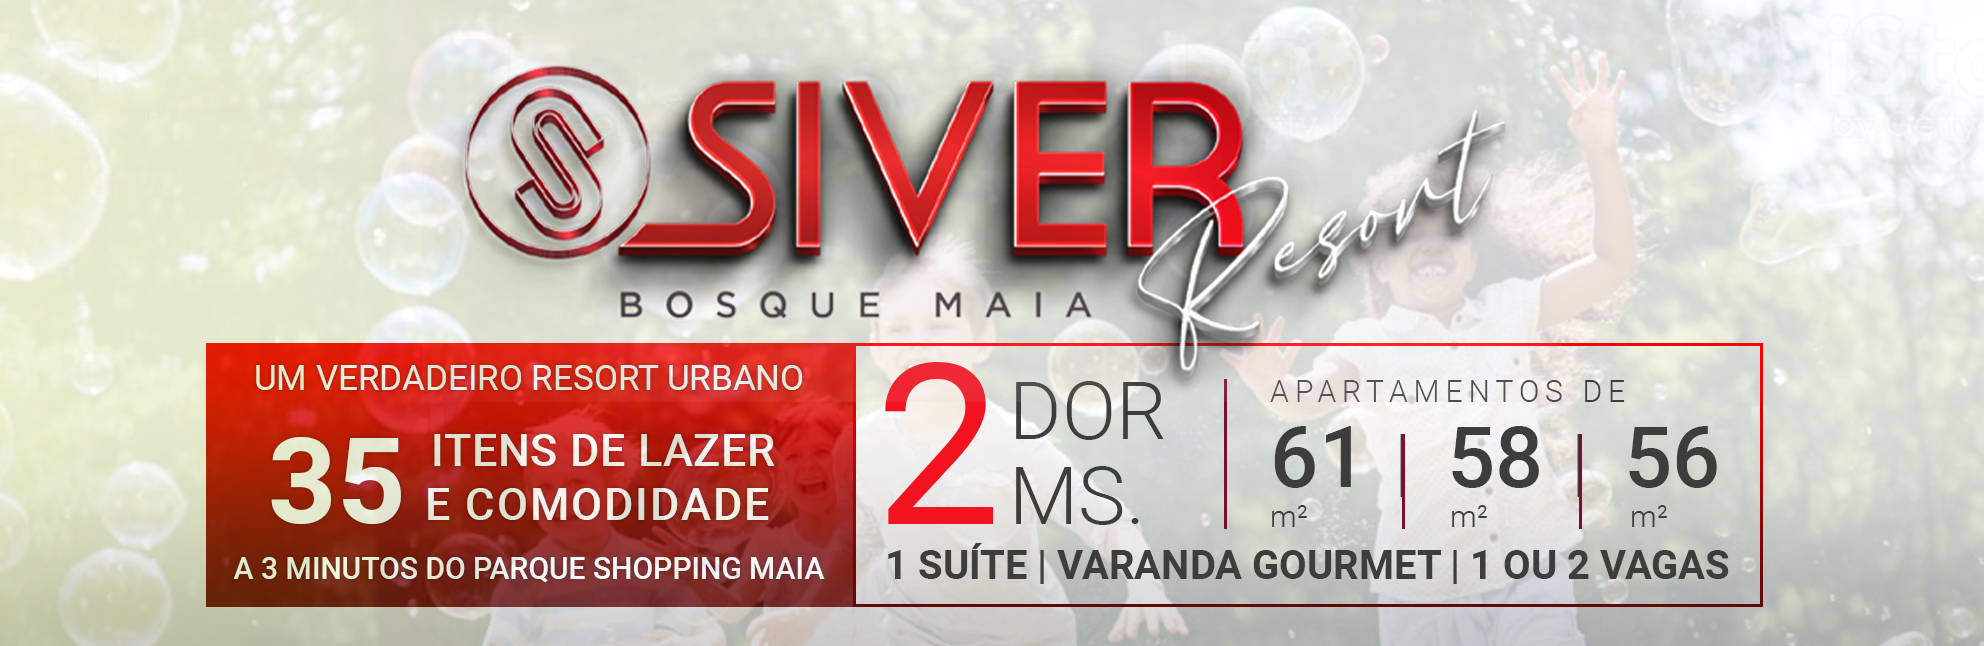 Siver Resort Bosque Maia | Apartamentos de 61m² com 2 Dorms | 1 Suíte | Varanda Gourmet | 1 ou 2 Vagas de Garagem